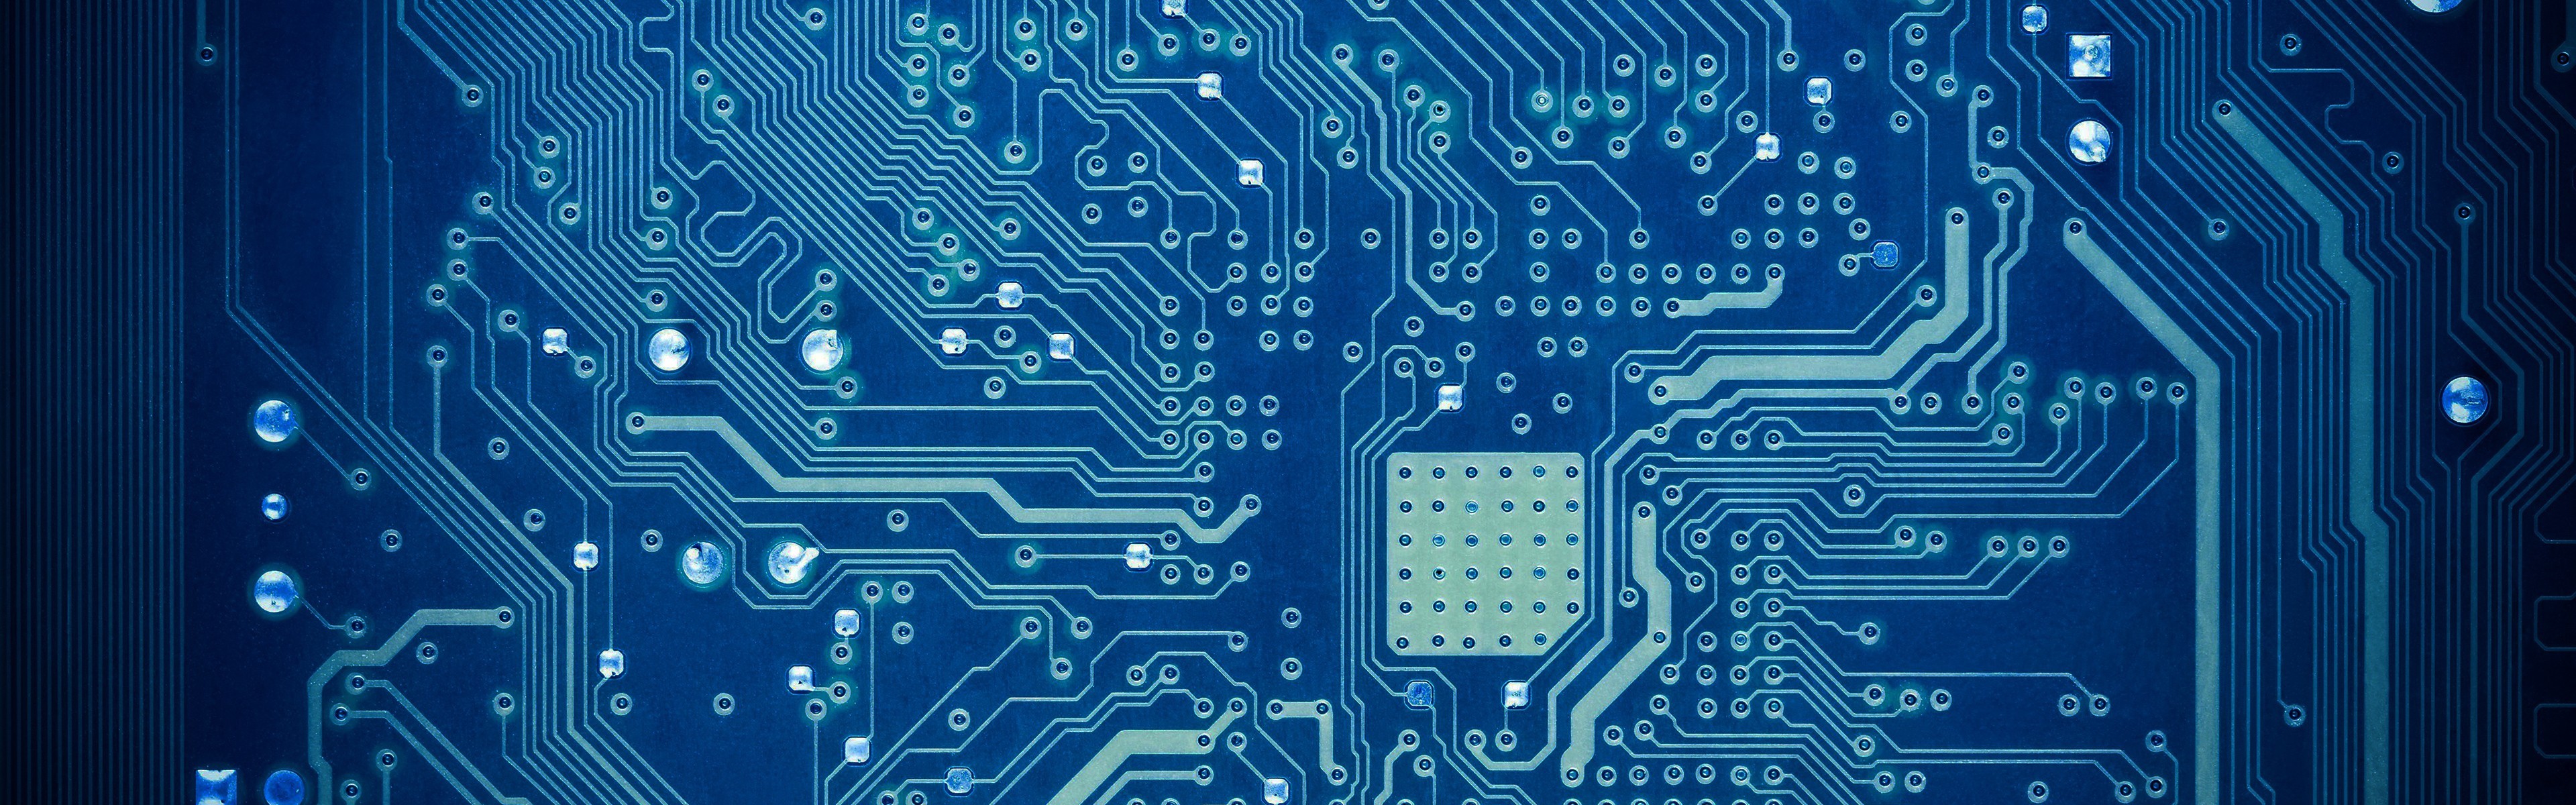 fondo de pantalla de la placa base,ingeniería electrónica,electrónica,azul,tarjeta madre,componente electrónico